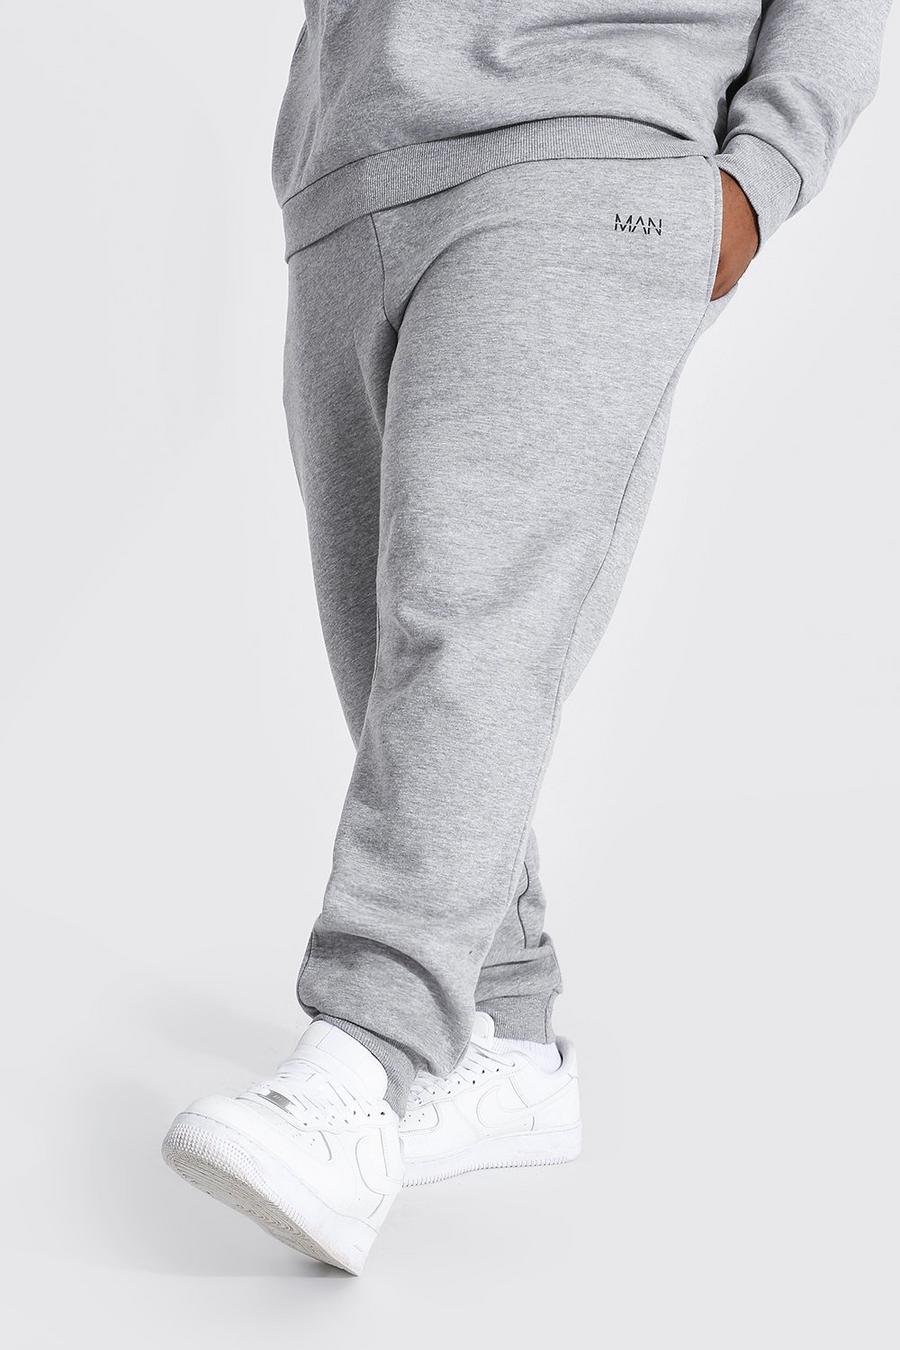 Pantaloni tuta Plus Size Man Dash Slim Fit in fibre riciclate, Grey marl grigio